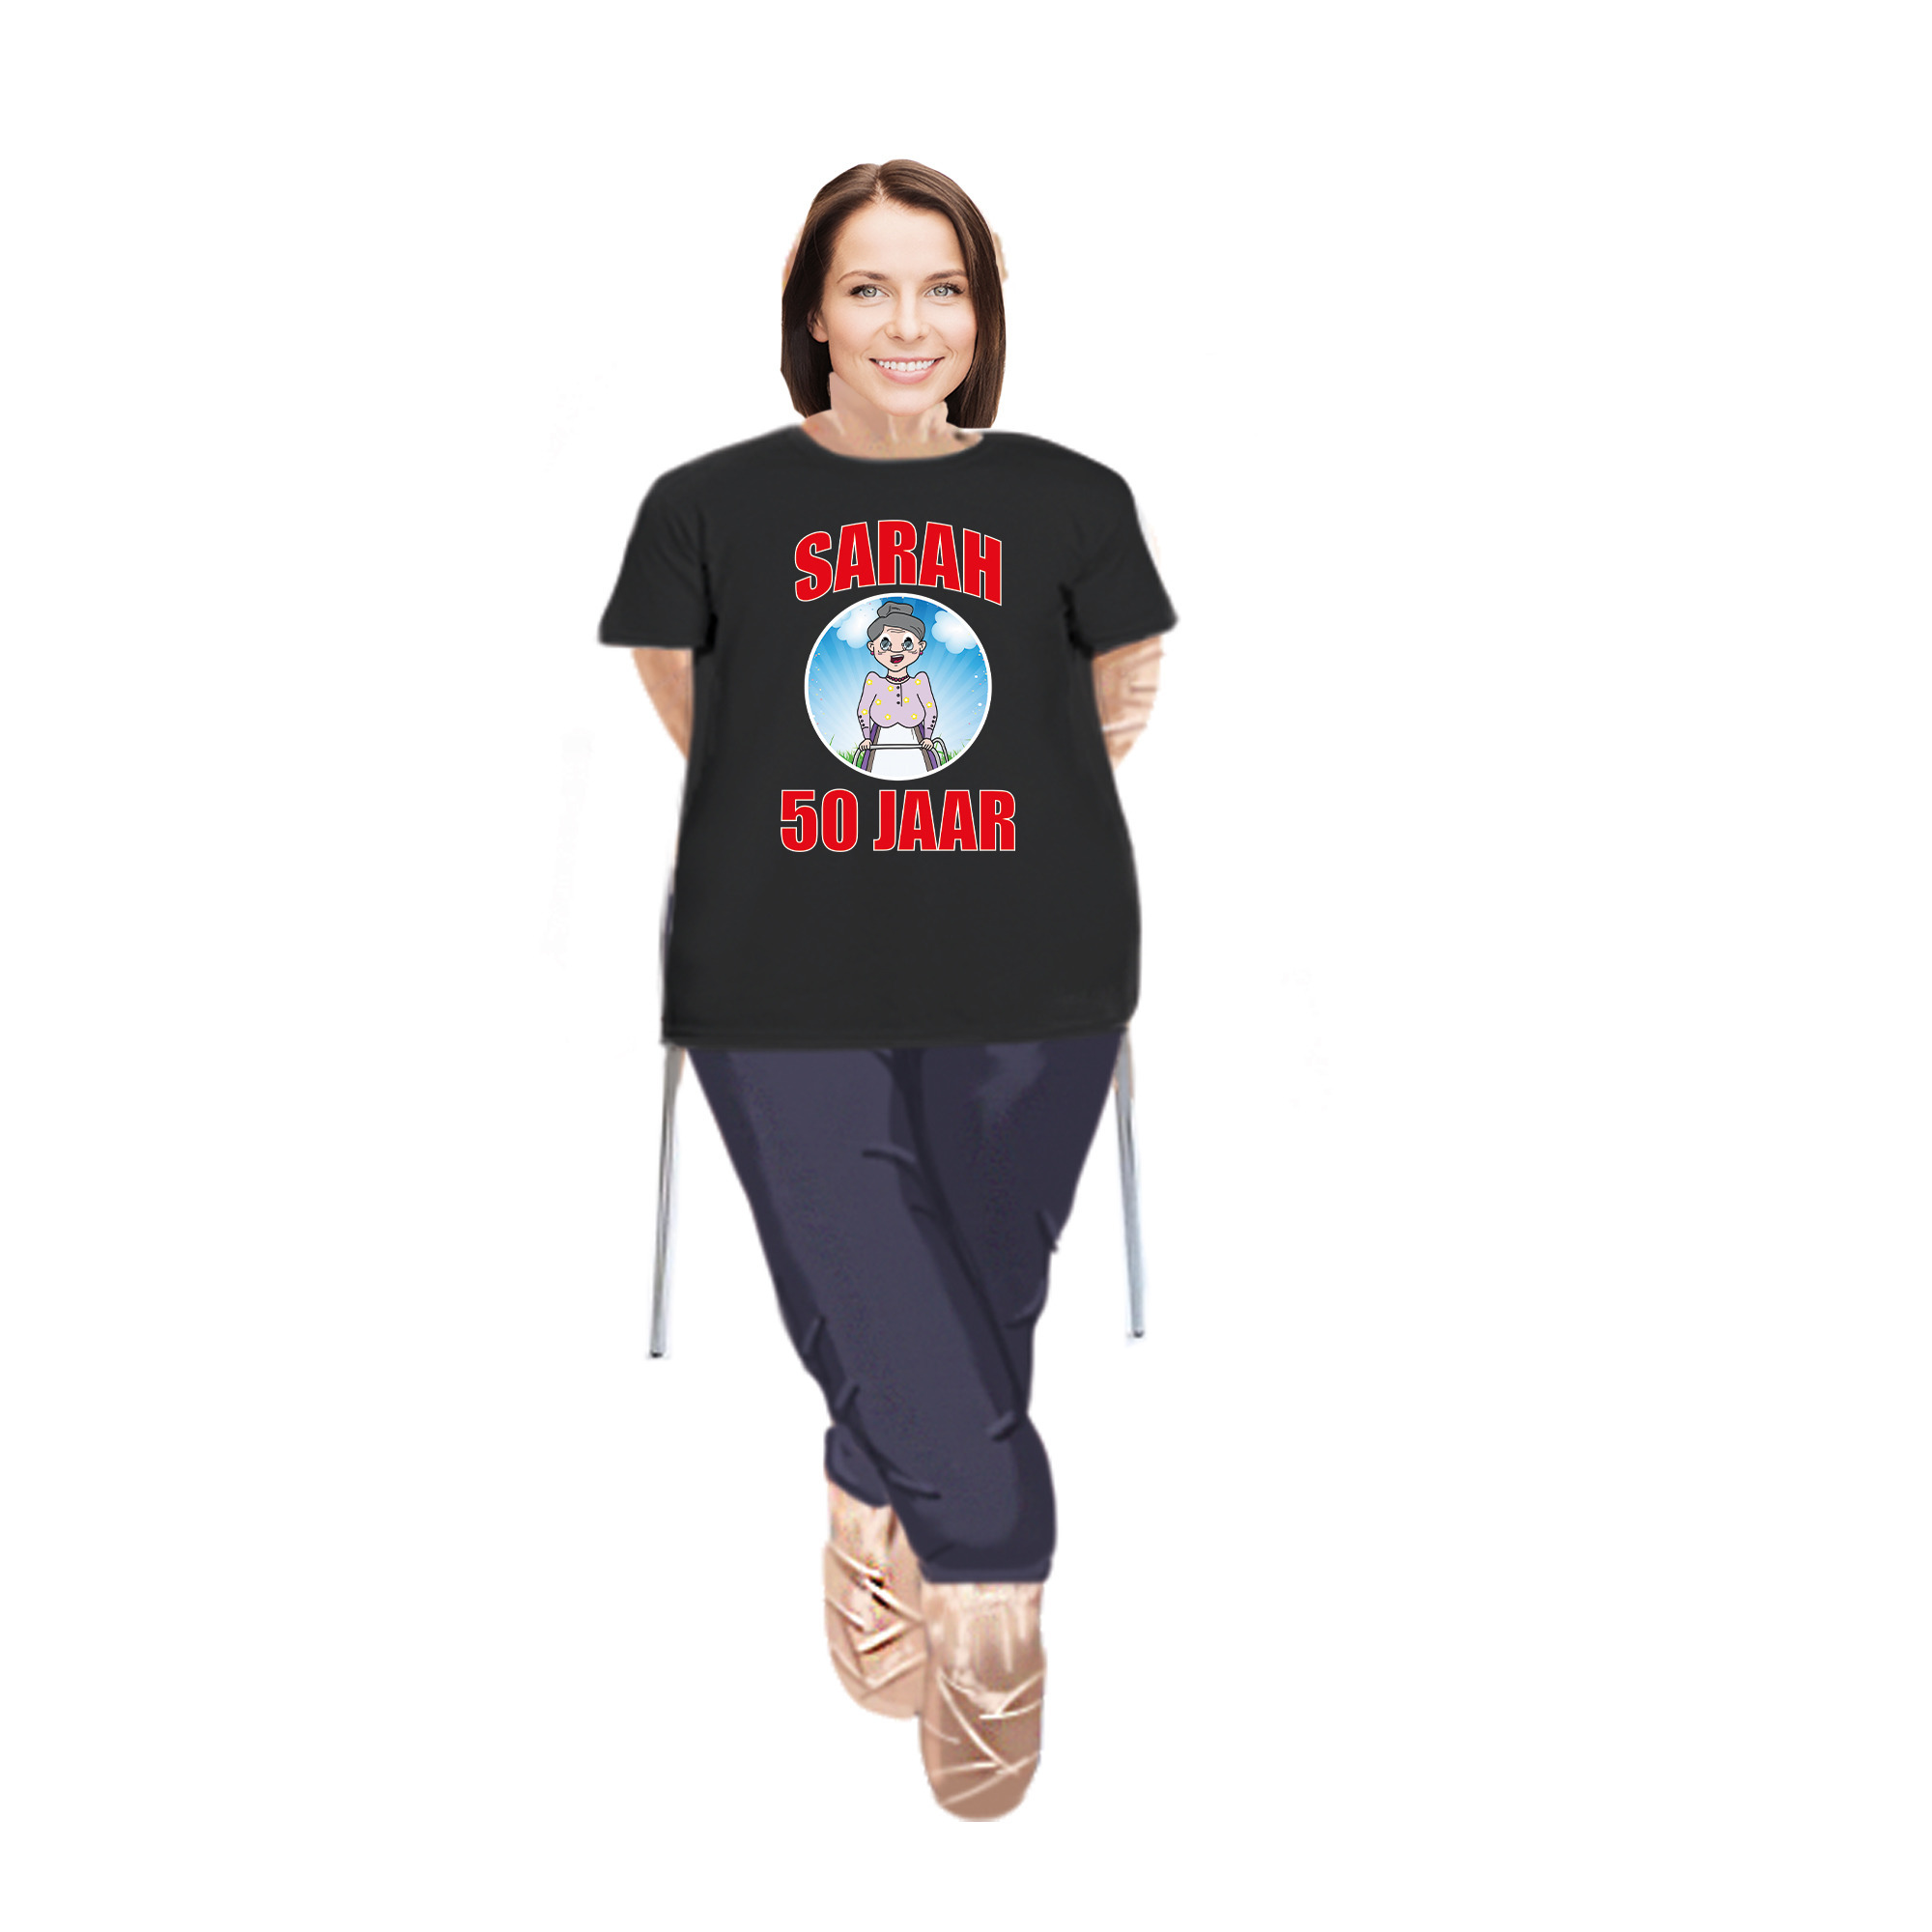 Sarah pop opvulbaar met Sarah pop shirt- kleding